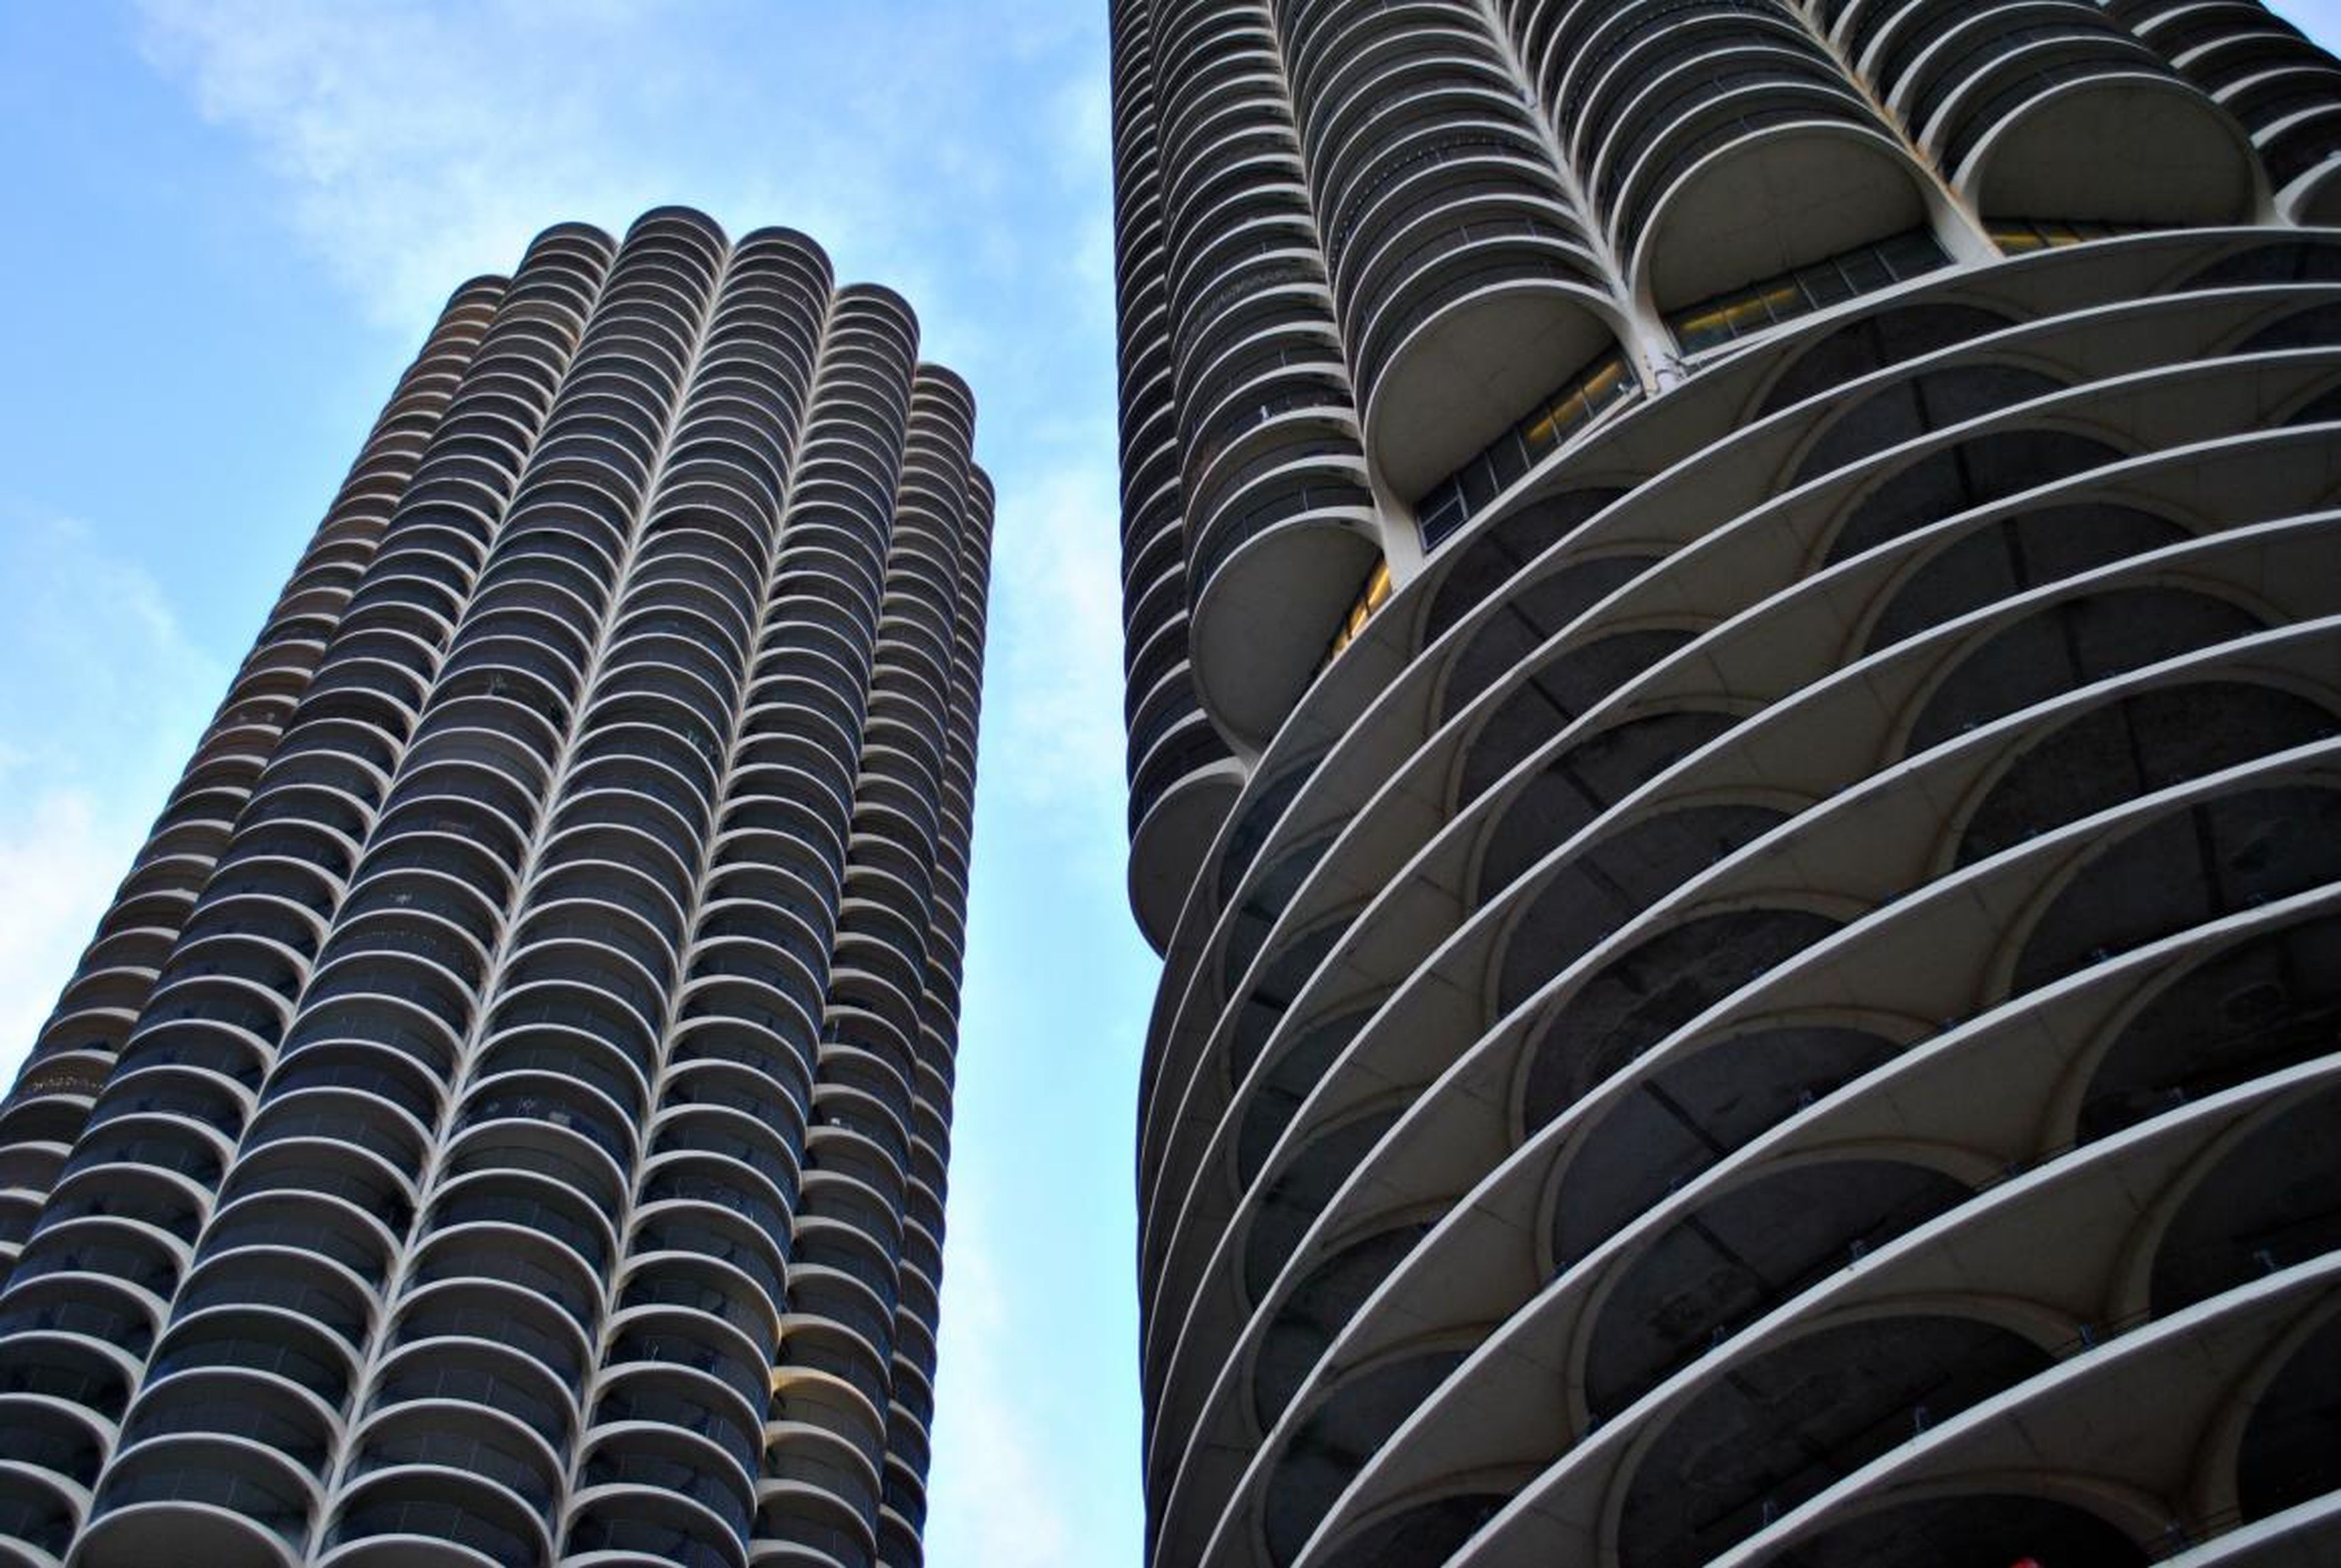 Los apartamentos de Chicago en Marina City tienen, como mínimo, un diseño único. Construido en 1964, fue uno de los primeros edificios de uso mixto y el primero en ser construido con una grúa en los Estados Unidos.